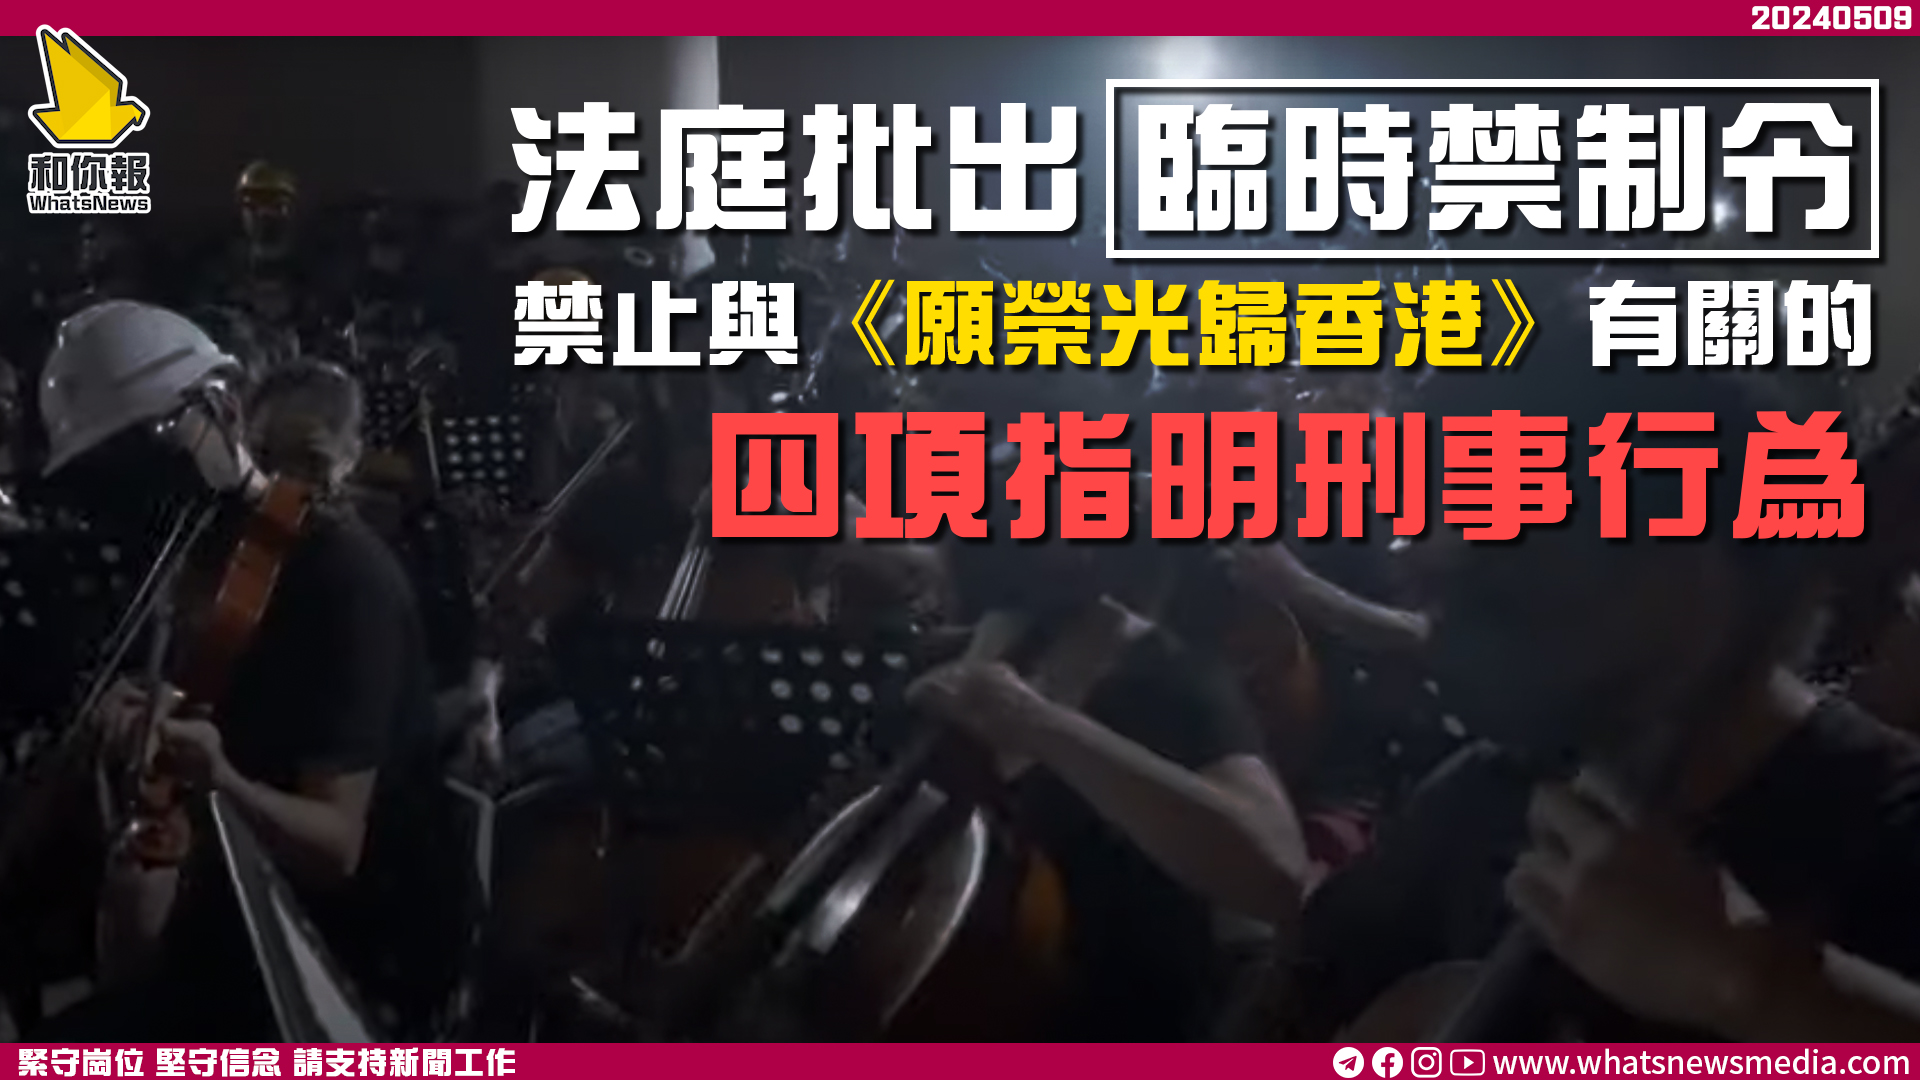 法庭批出臨時禁制令 禁止與《願榮光歸香港》有關的四項指明刑事行為